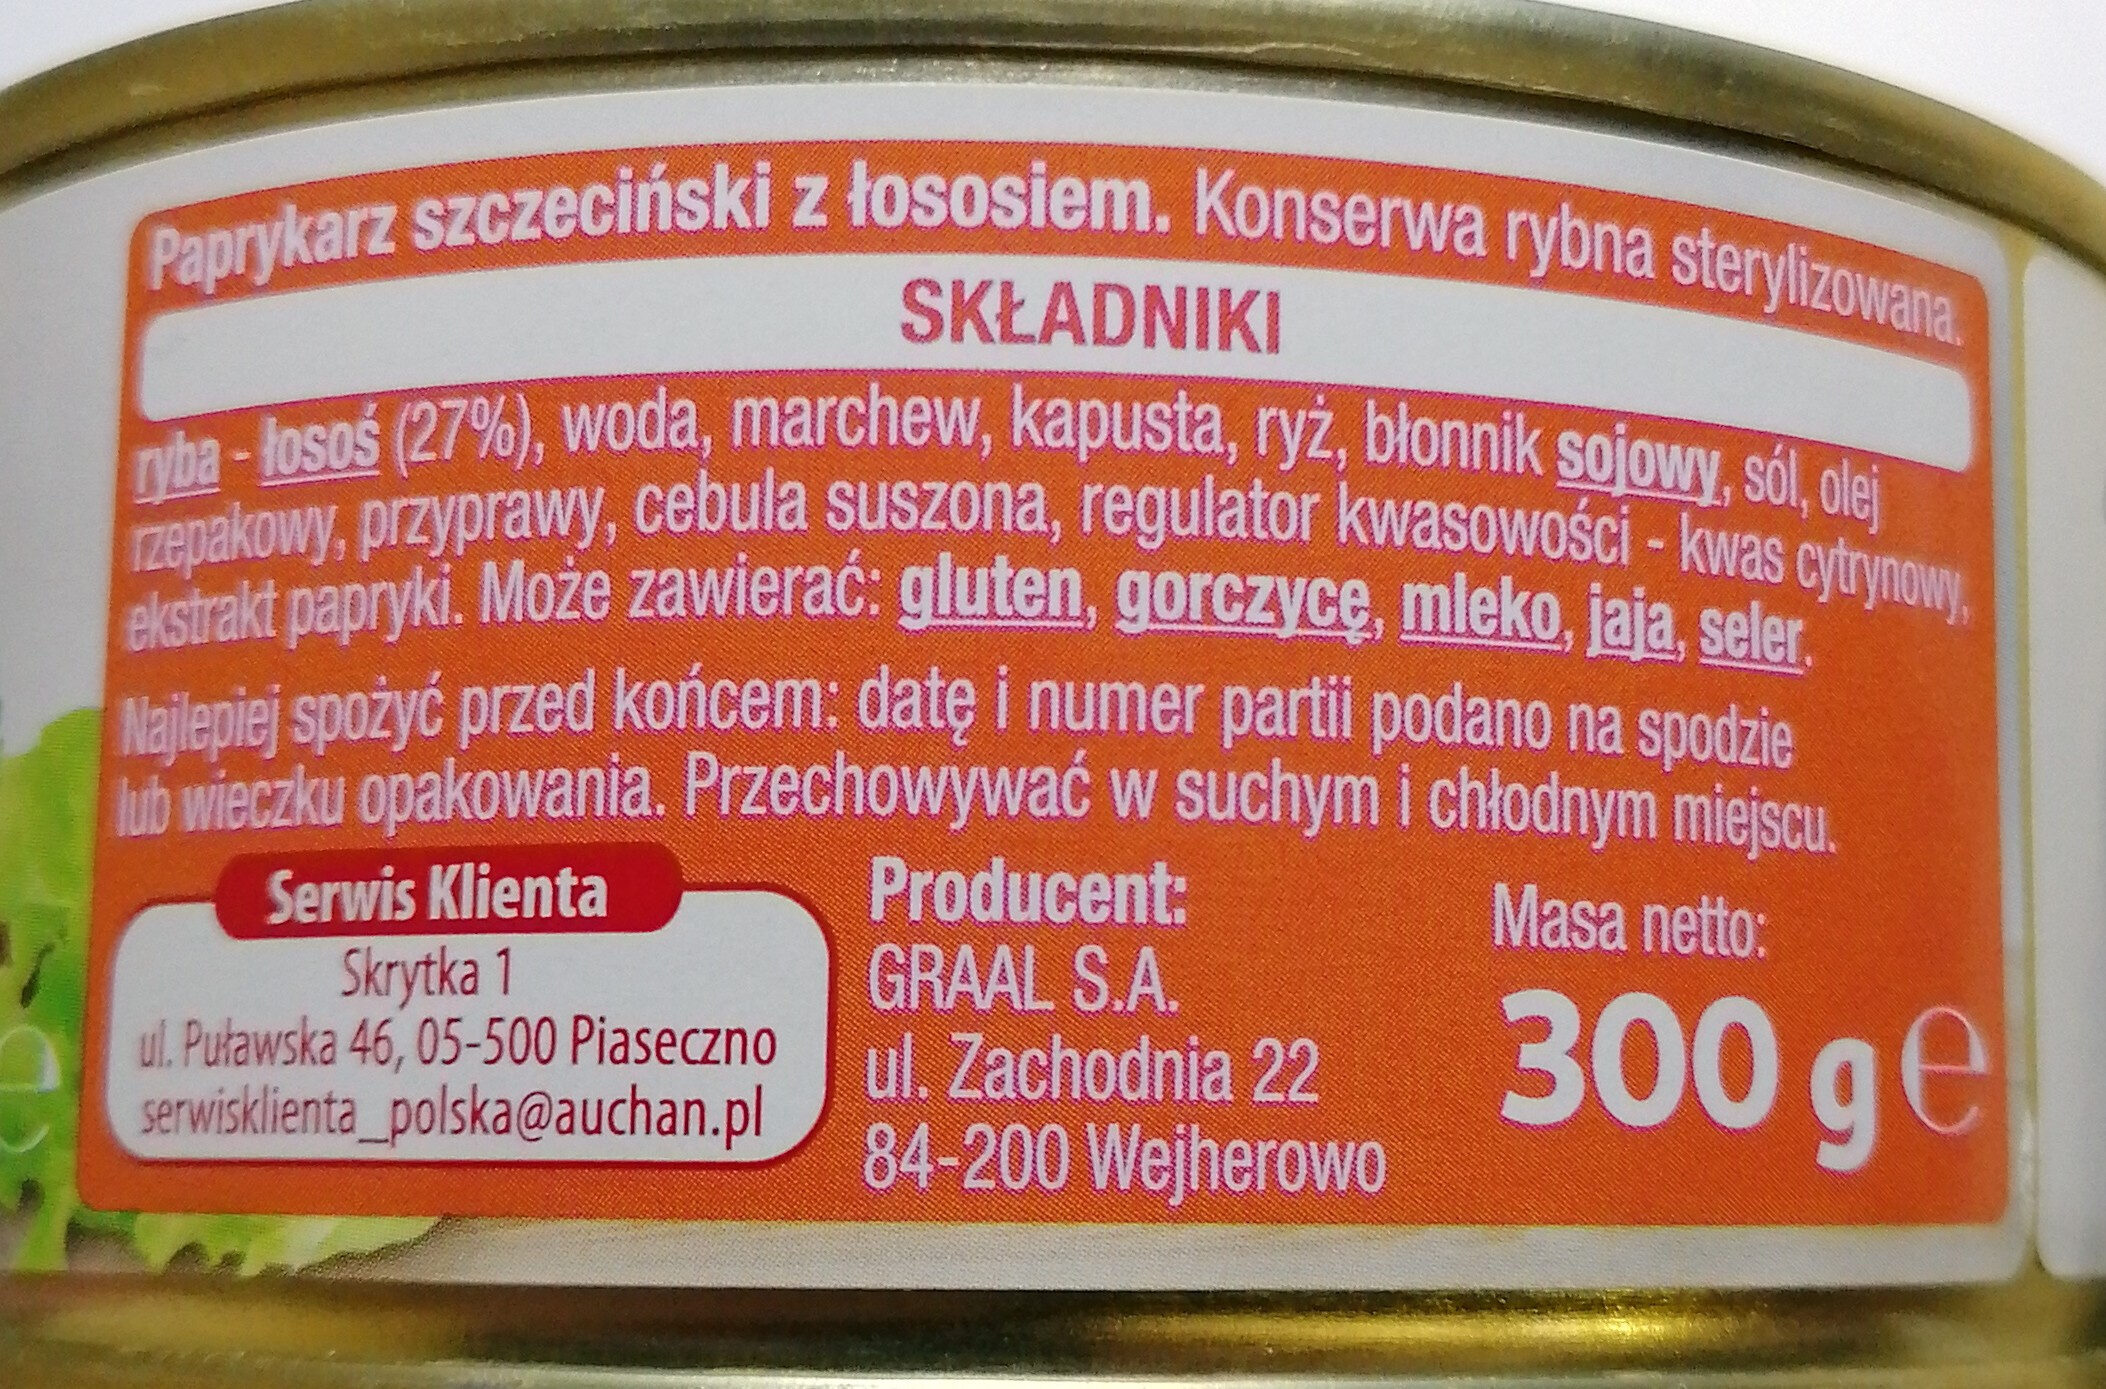 Paprykarz Szczeciński z łososiem. - Ingrédients - pl